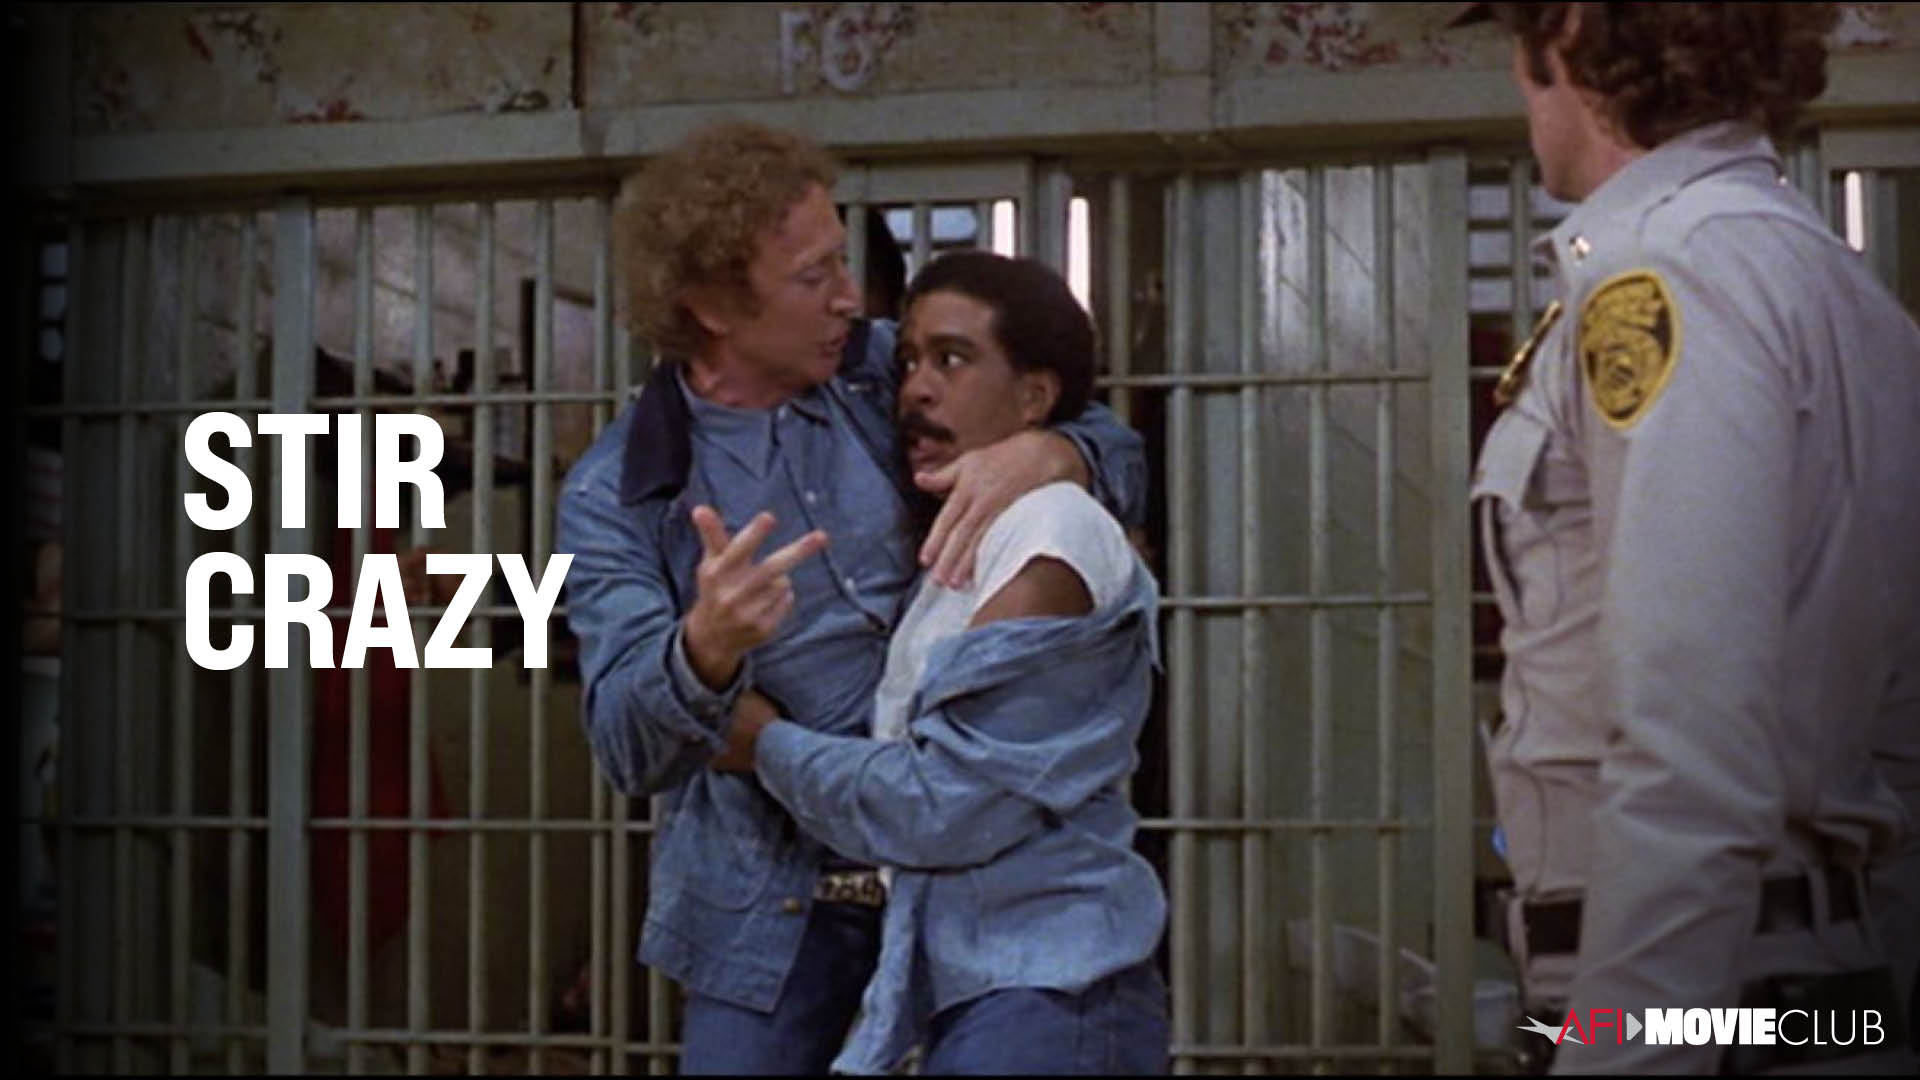 Stir Crazy Film Still - Gene Wilder and Richard Pryor